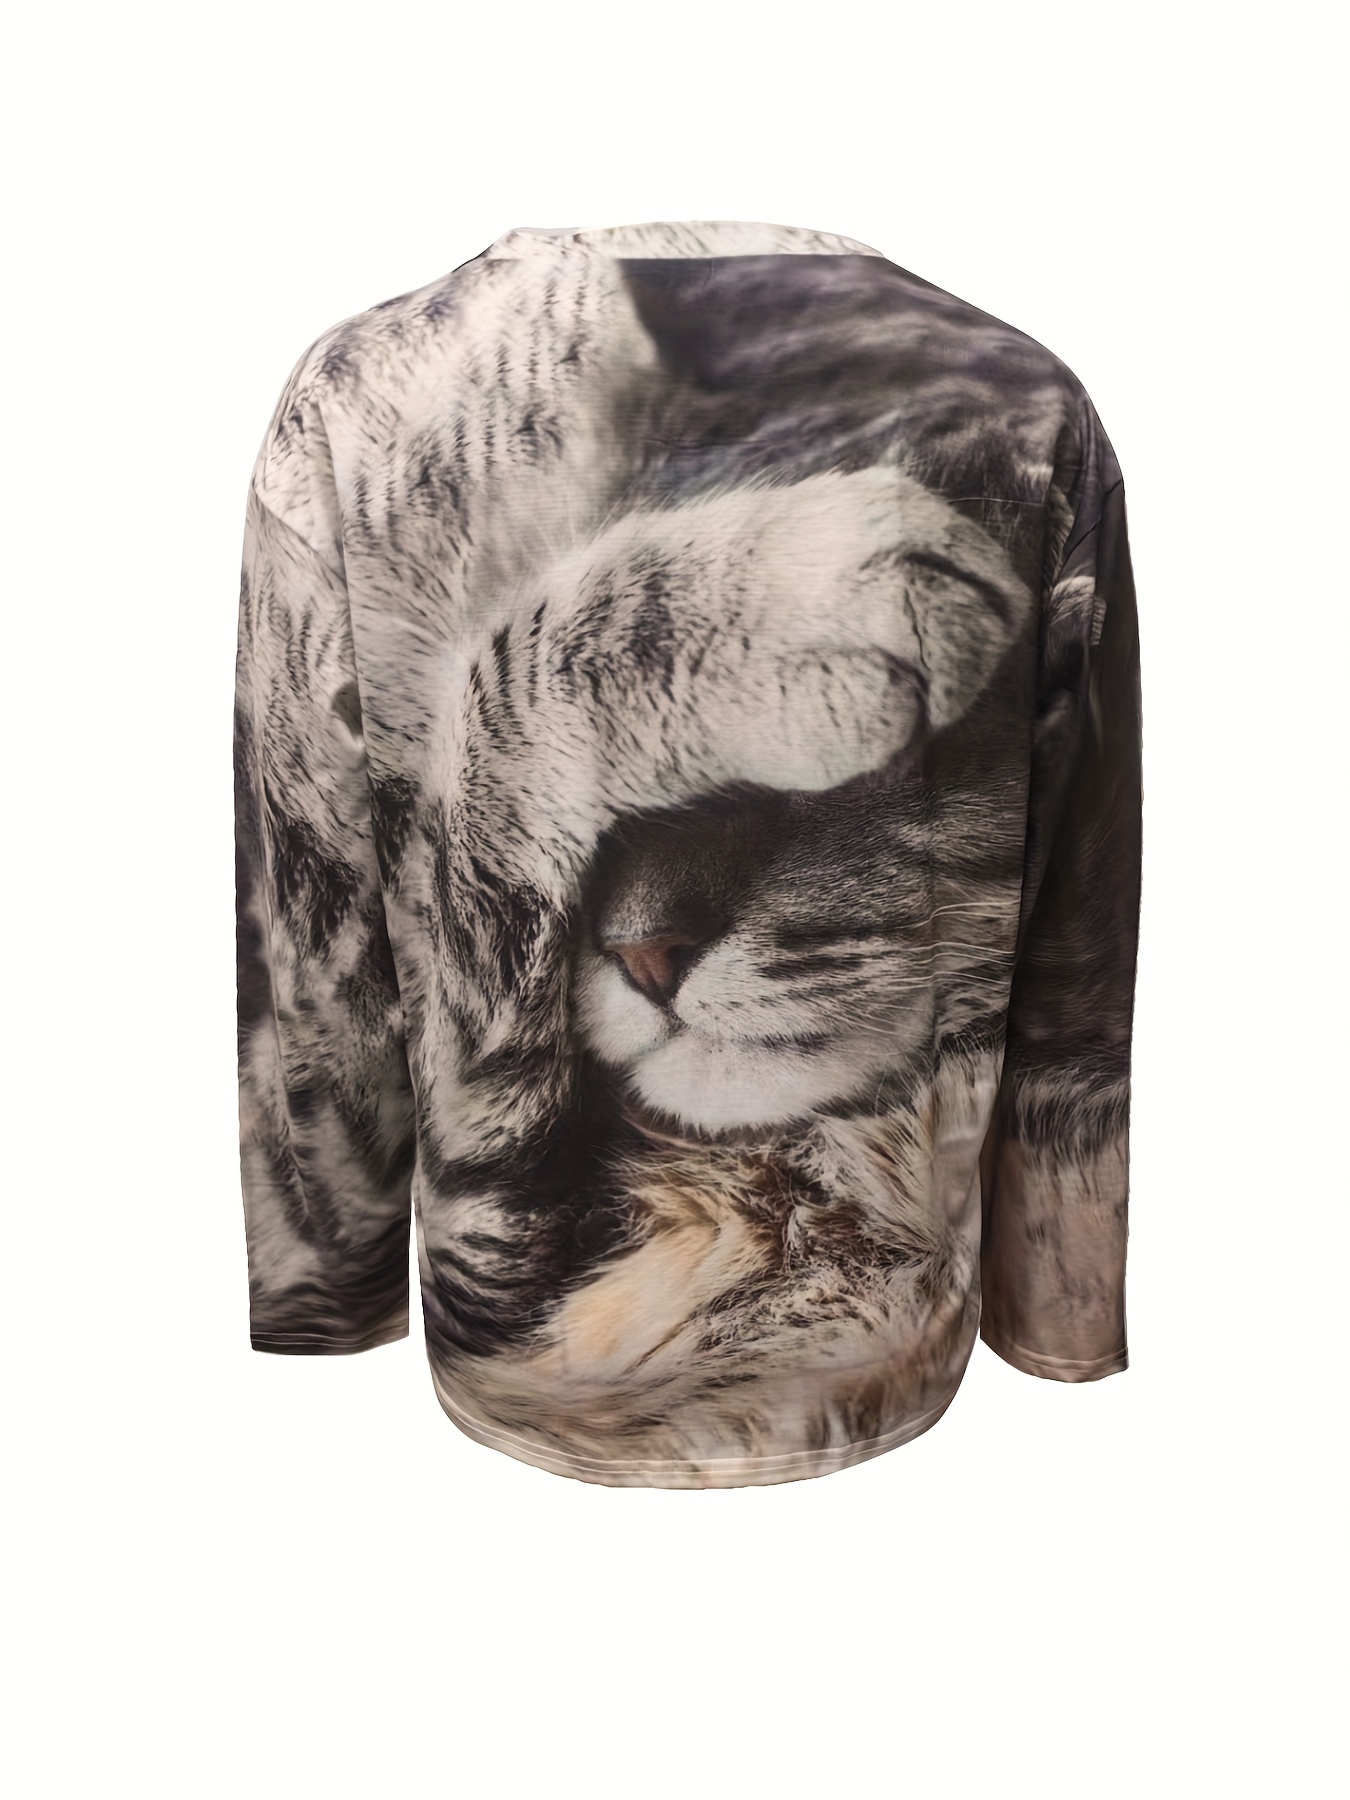 Camisola de manga comprida estampada para gato feminina, Hoodies